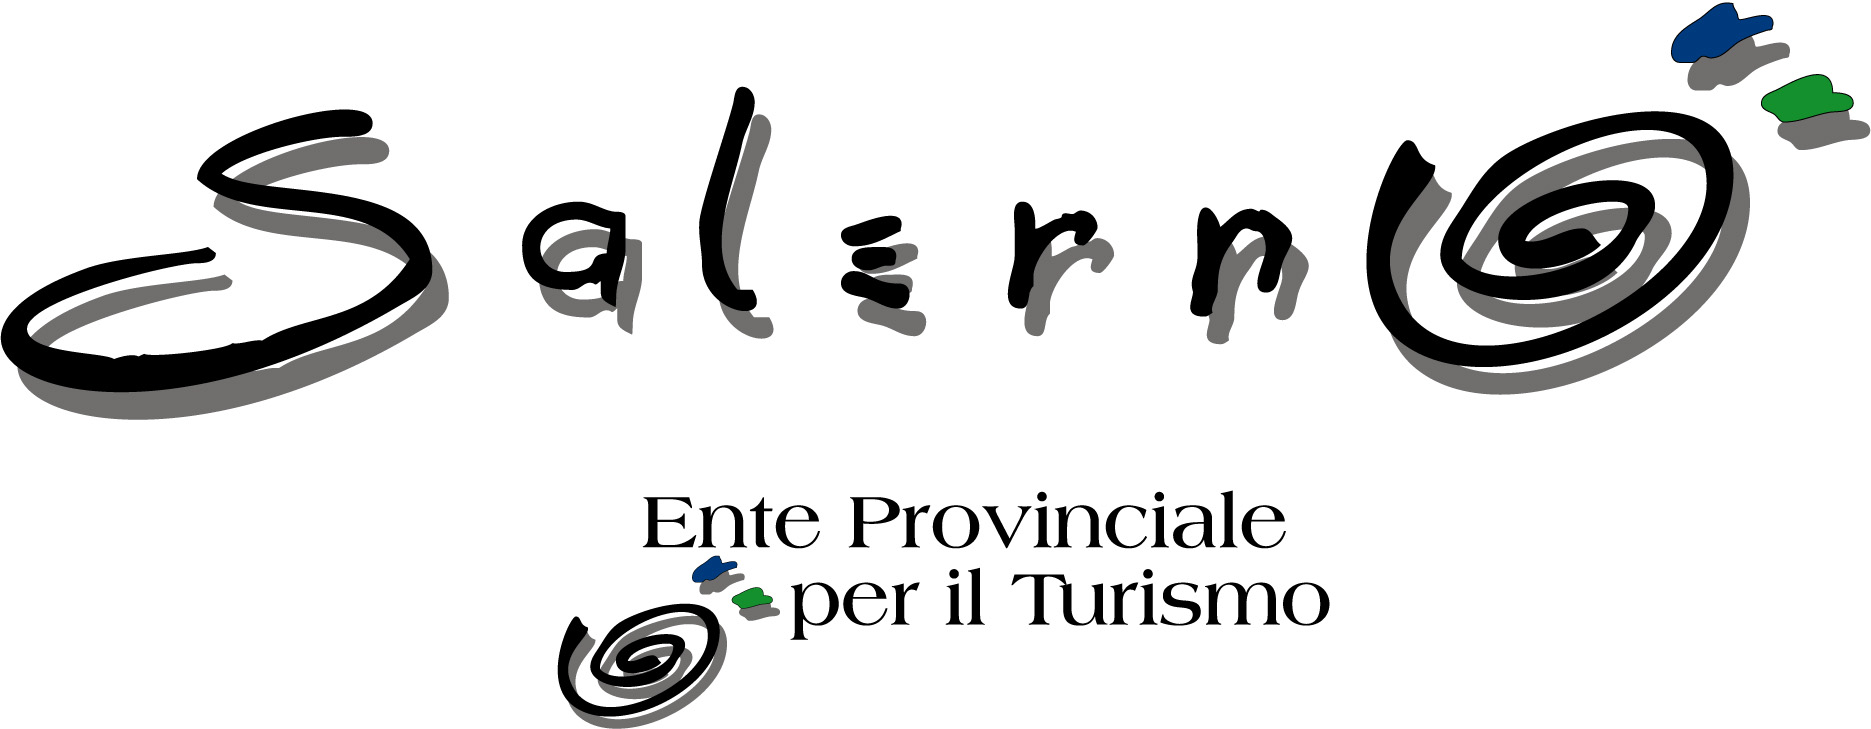 Ente Provinciale per il Turismo (EPT) di Salerno : Brand Short Description Type Here.